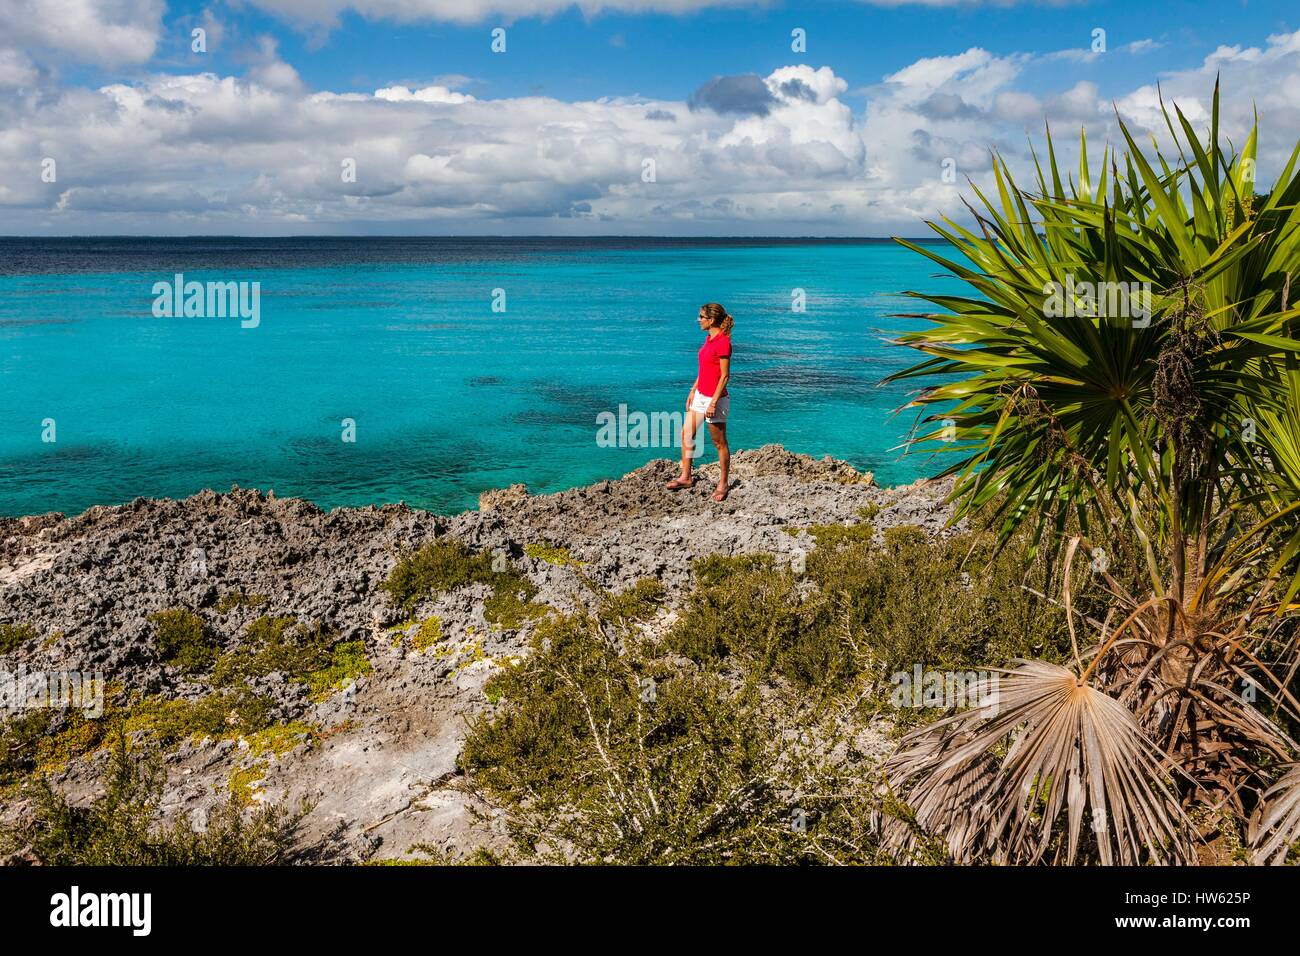 Cuba, province de Matanzas, la péninsule de Zapata, Baie des Cochons, Playa Giron Banque D'Images